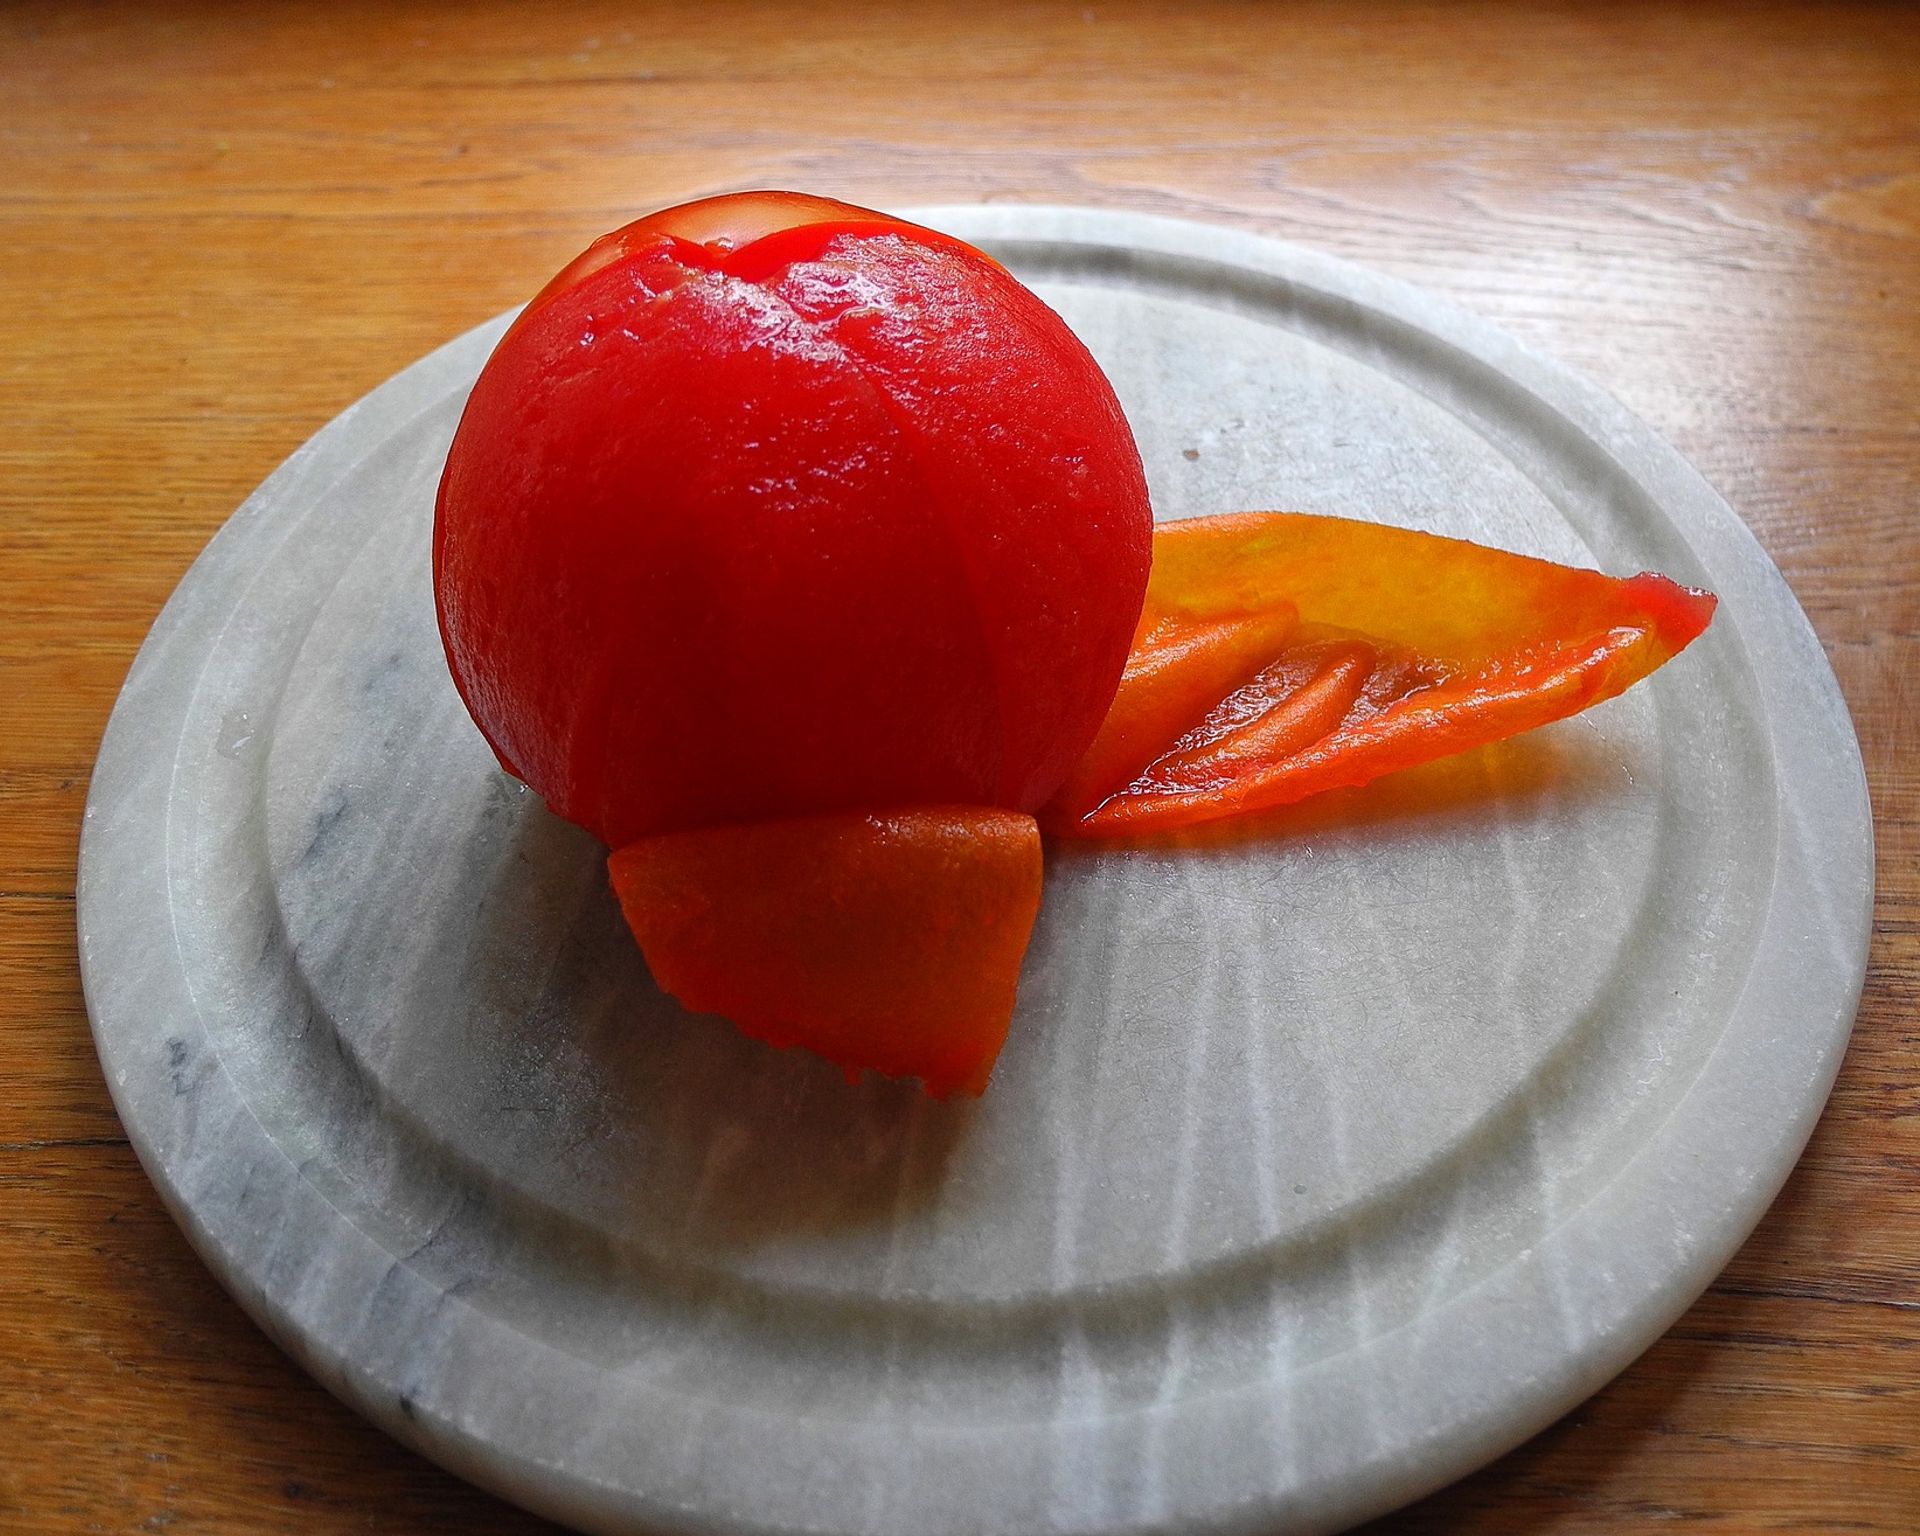 Trochu ošúpaná červená paradajka - začiatok šúpania na bielom tanieriku